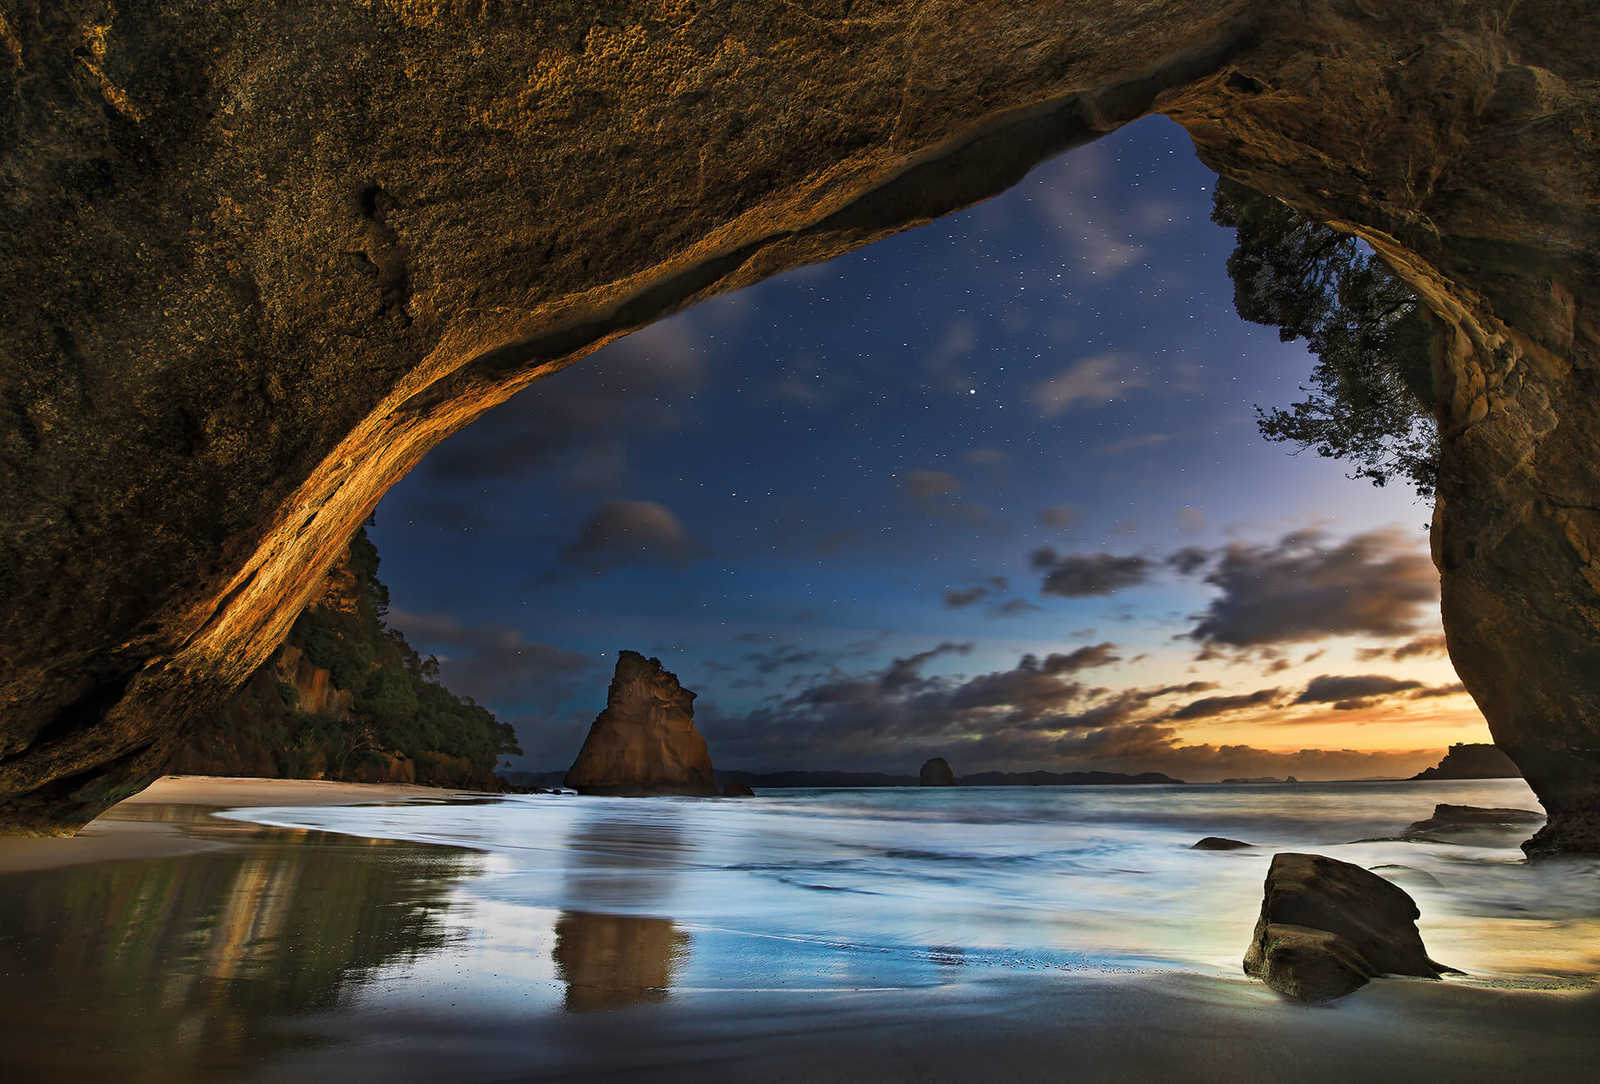         Fototapete Natur Höhle in Neuseeland – Braun, Blau
    